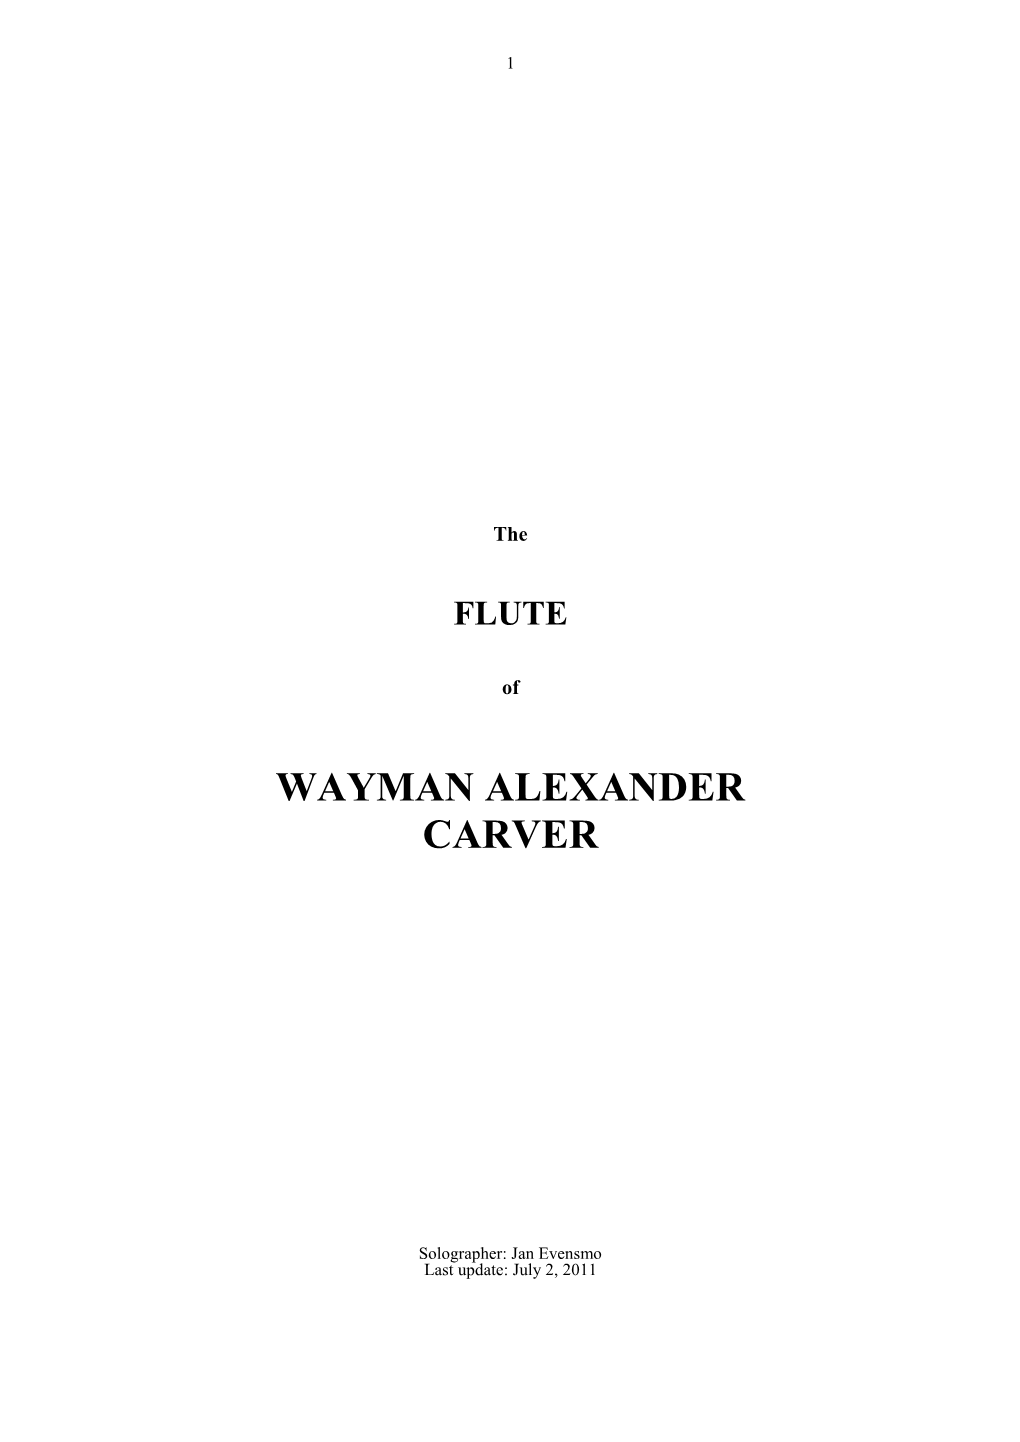 Download the FLUTE of WAYMAN ALEXANDER CARVER